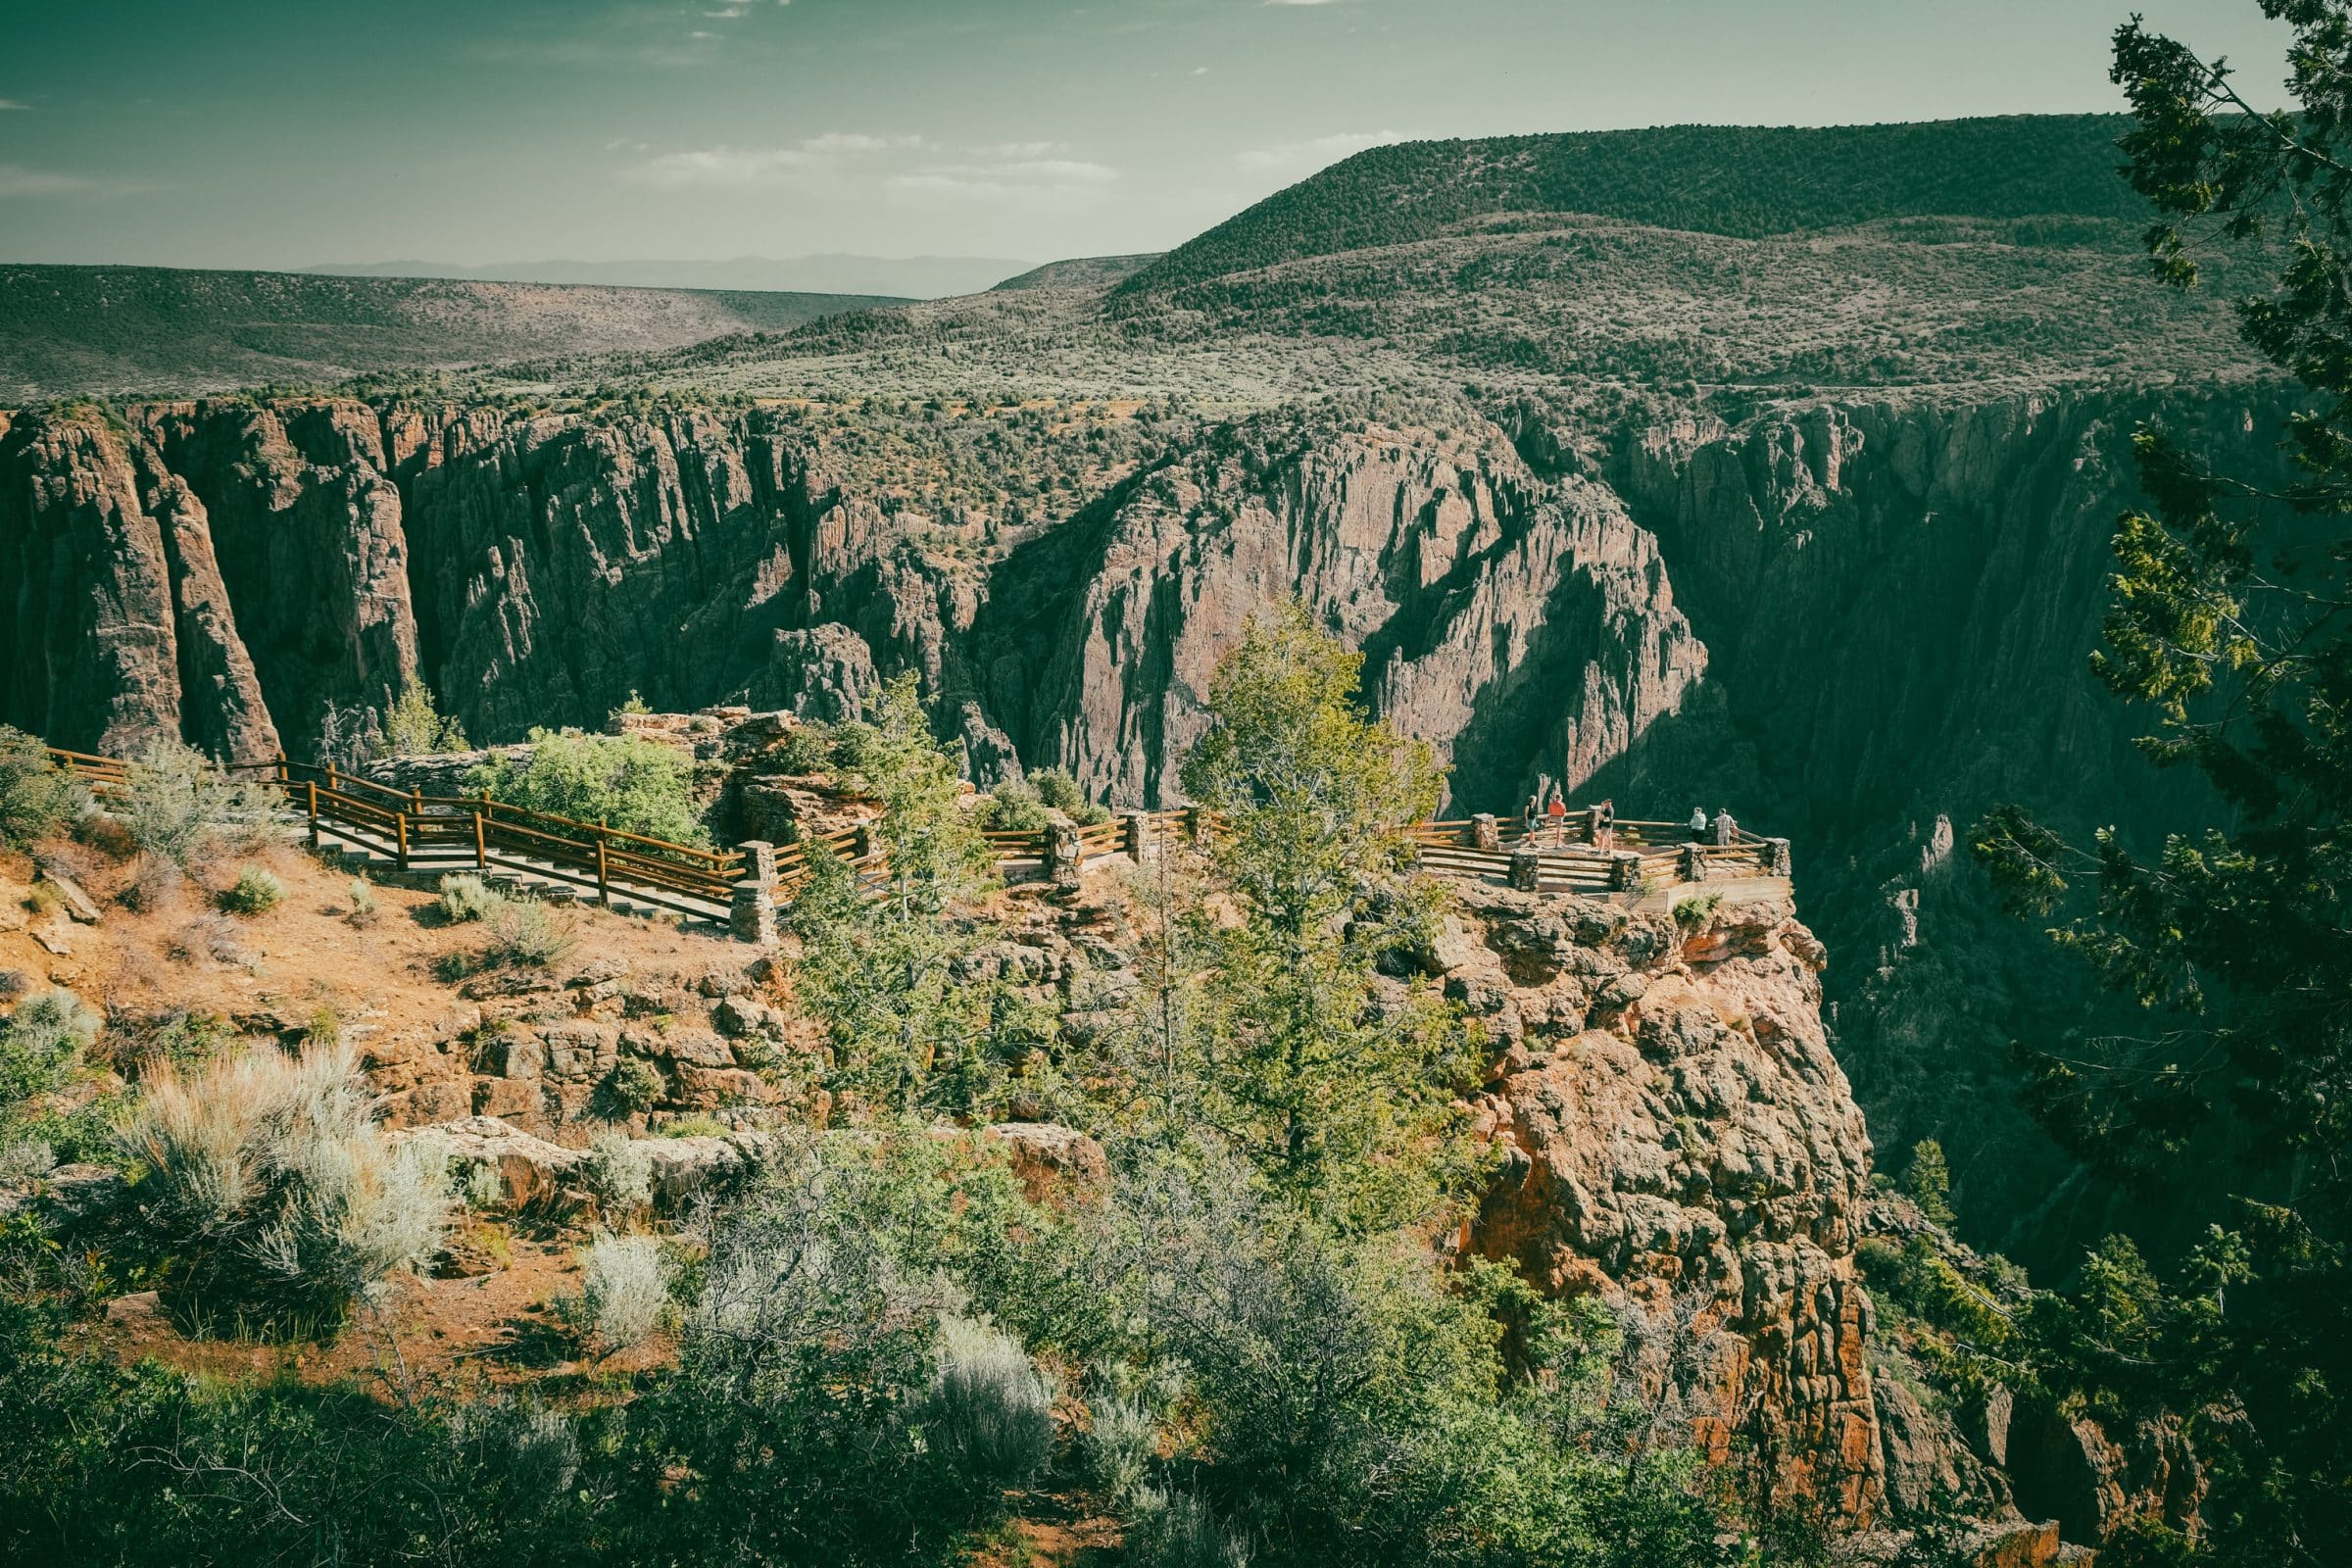 Eén van de uitzichtpunten in Black Canyon of the Gunnison National Park